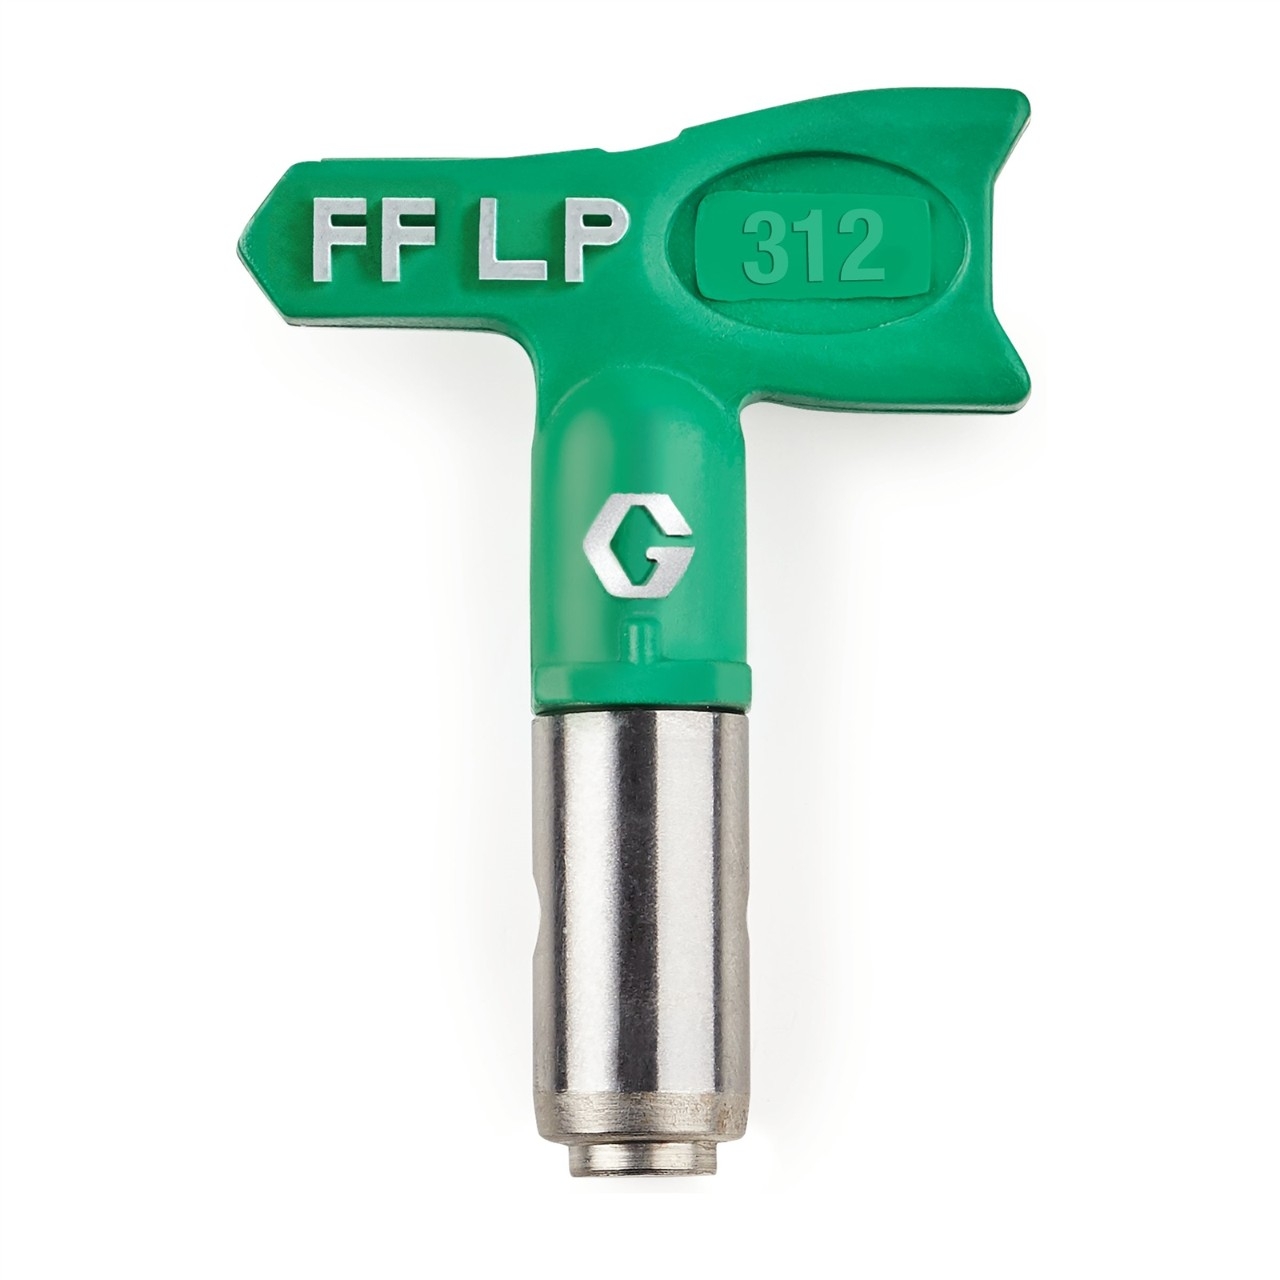 Duză FFLP SwitchTip 312 pentru finisaj fin la presiune scăzută, compatibilă cu RAC X